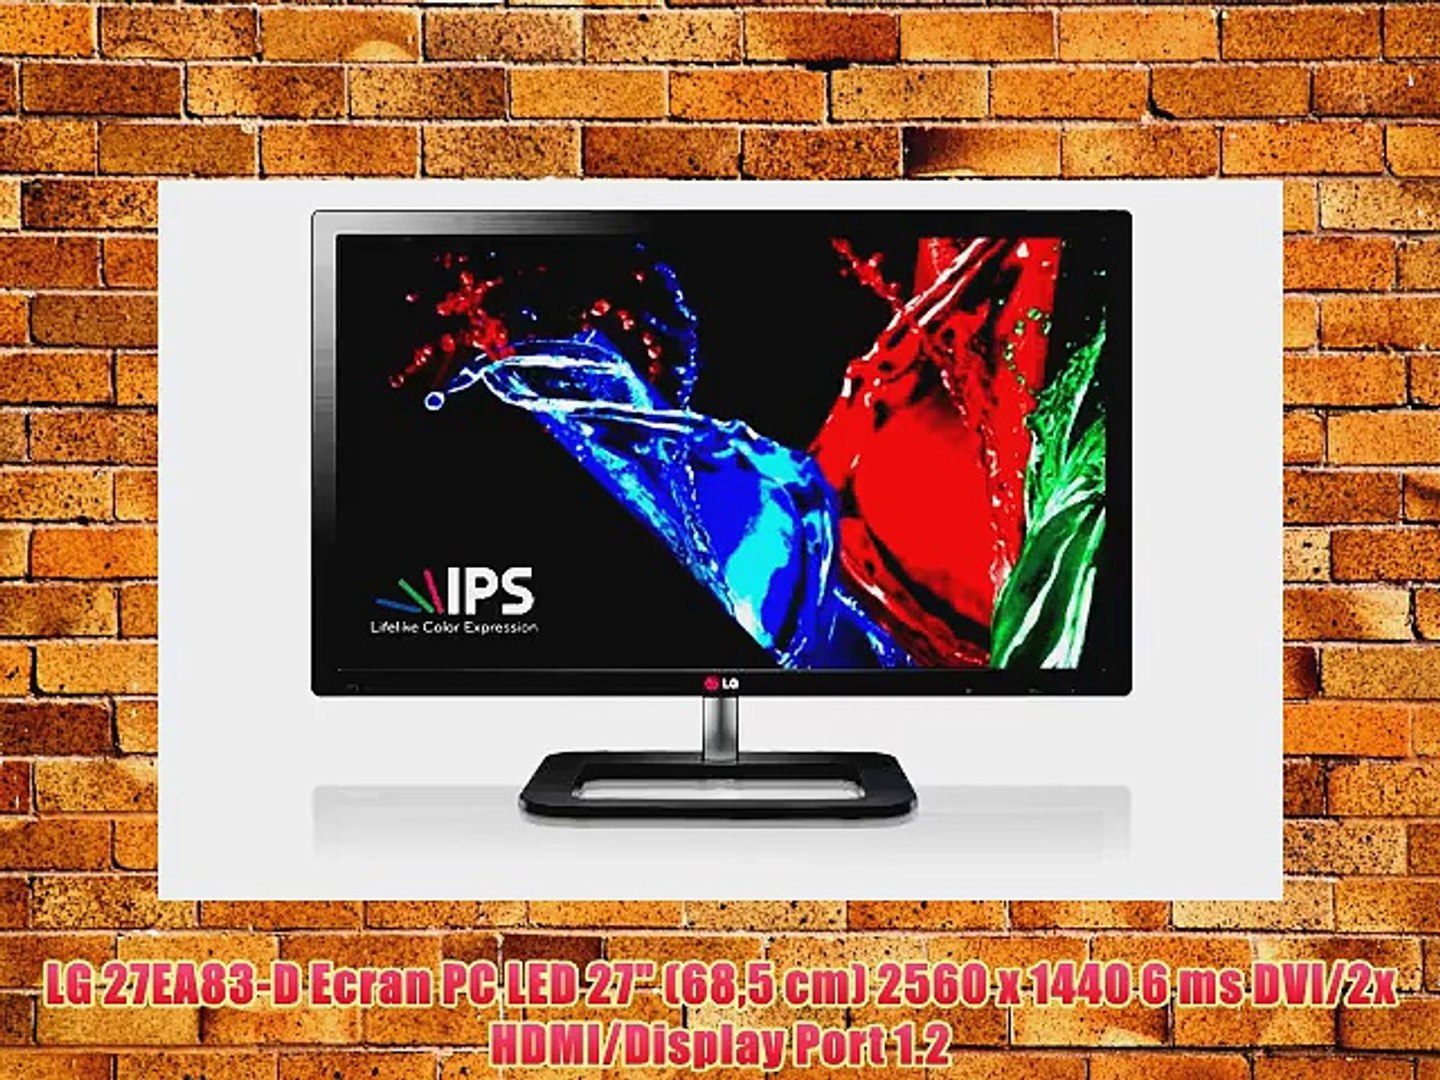 ⁣LG 27EA83-D Ecran PC LED 27 (685 cm) 2560 x 1440 6 ms DVI/2x HDMI/Display Port 1.2